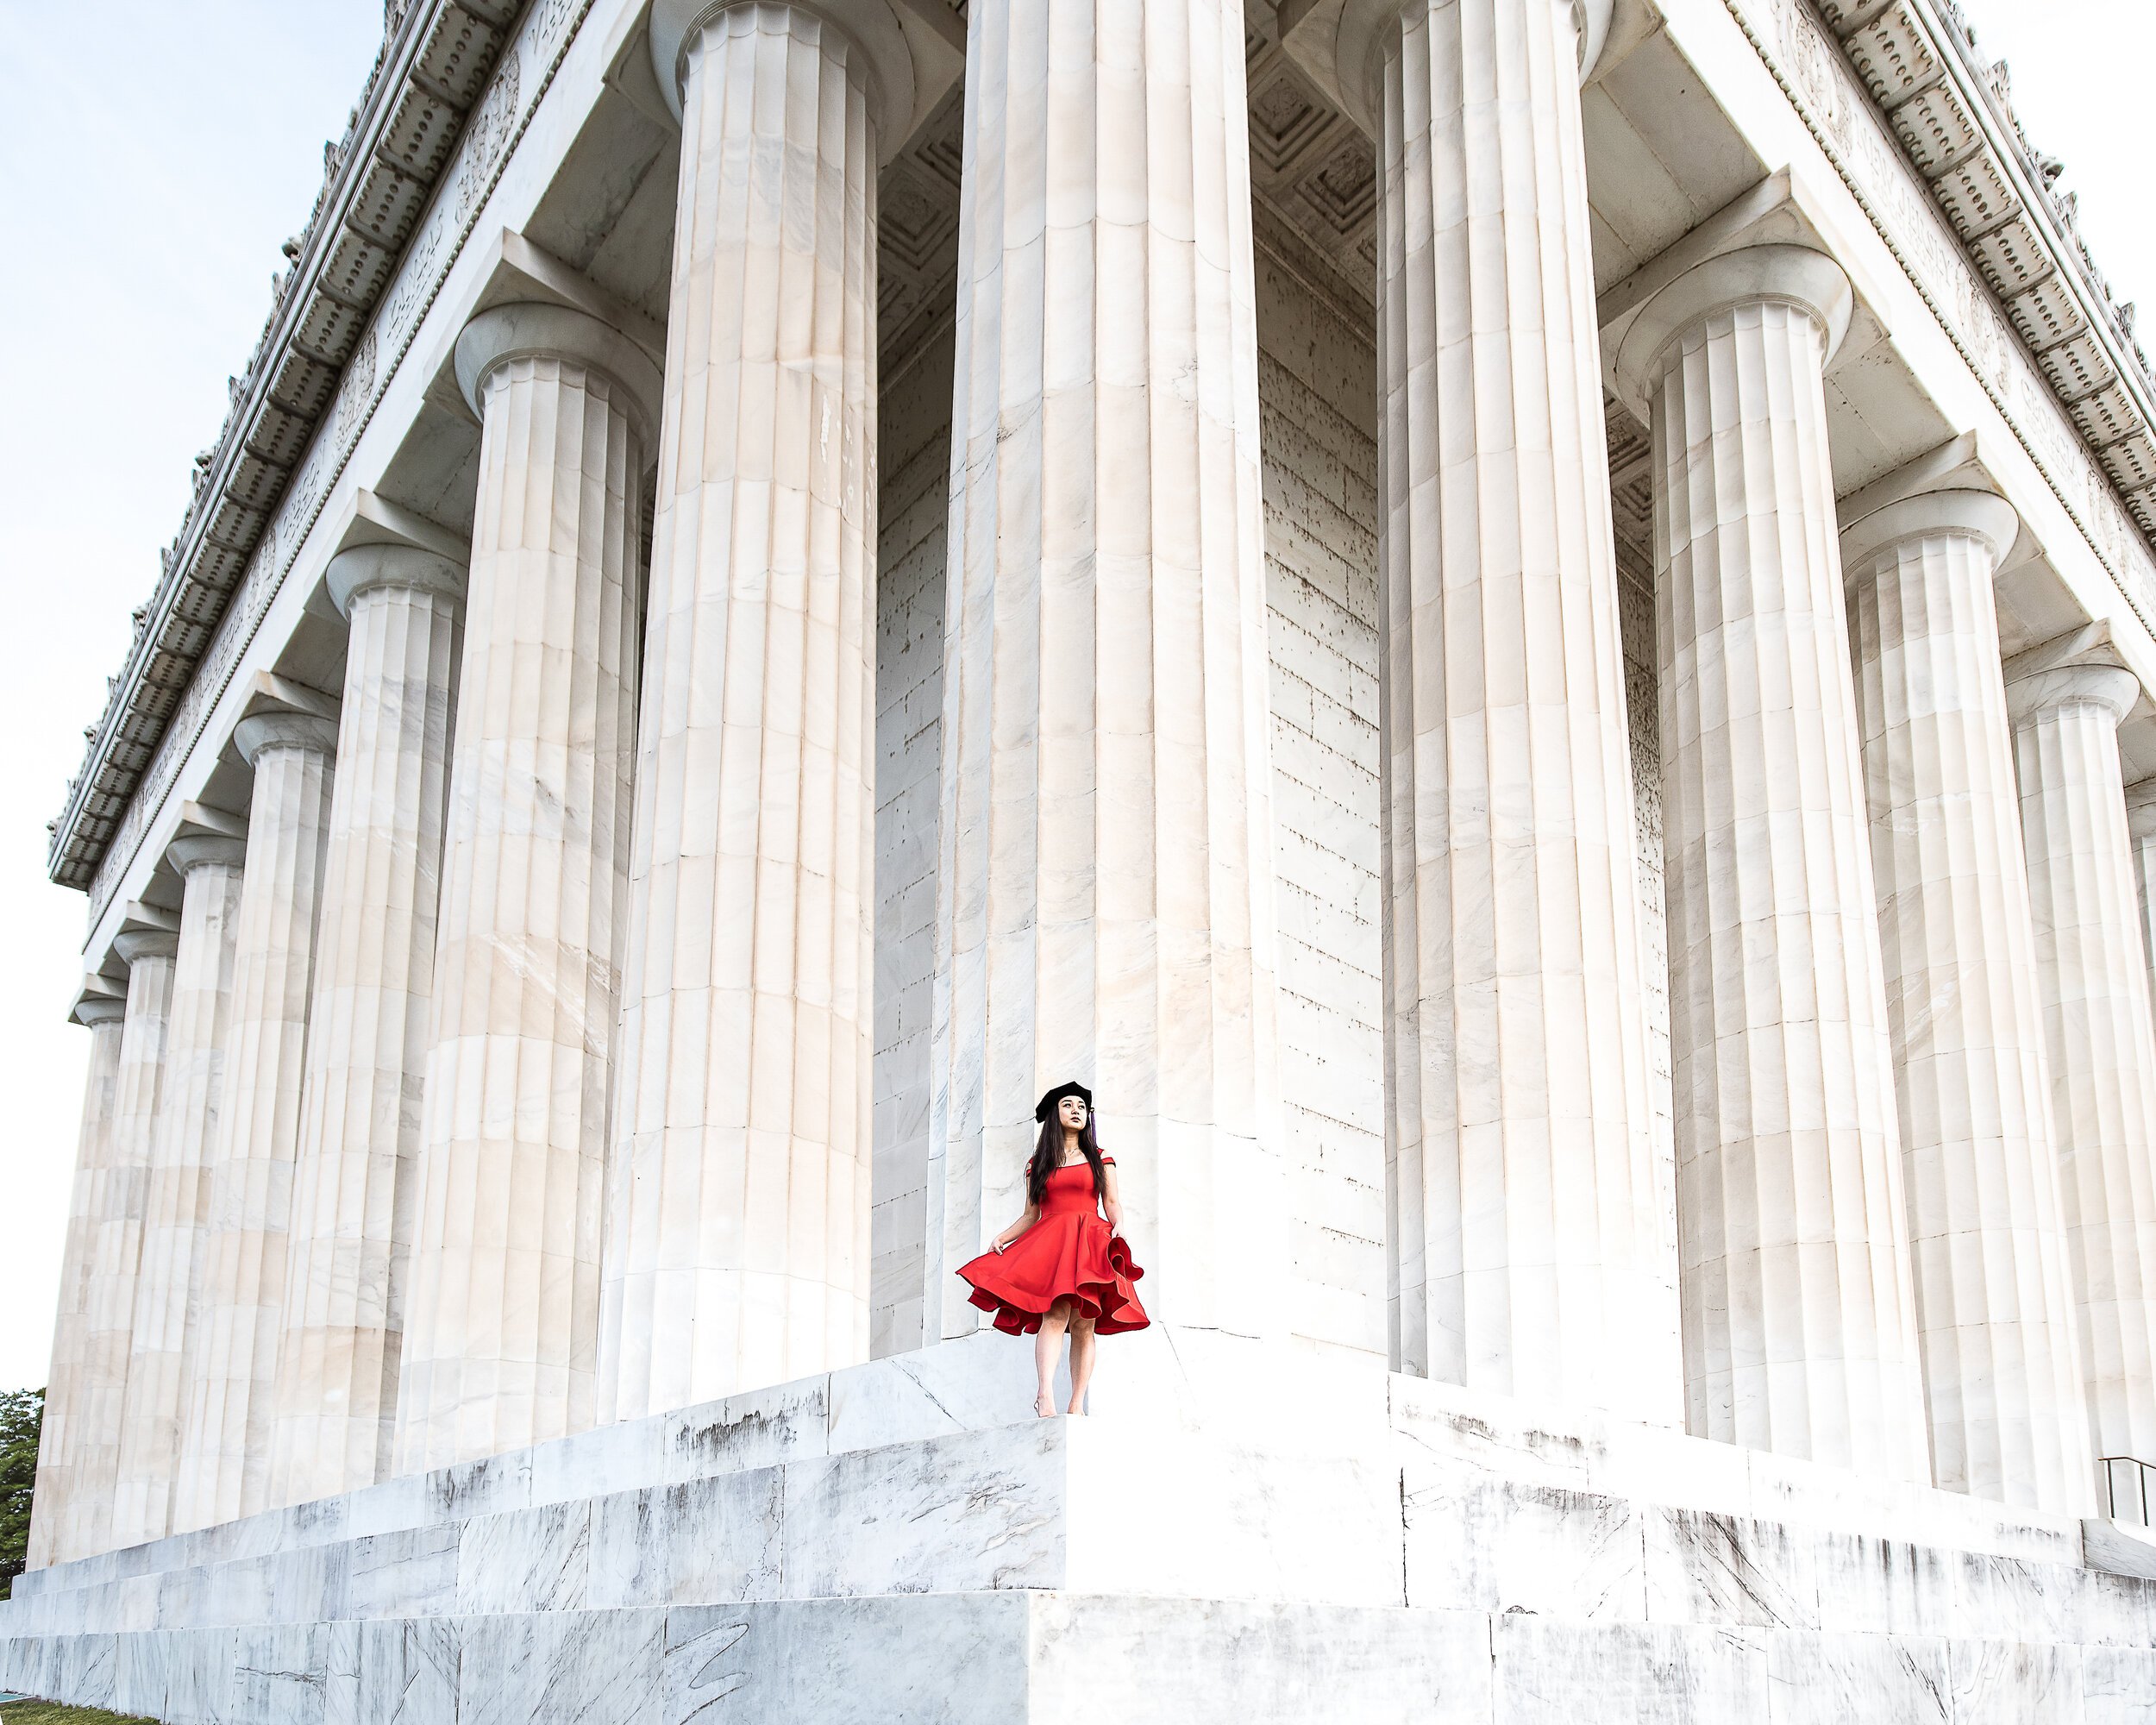 Lincoln Memorial photo shoot